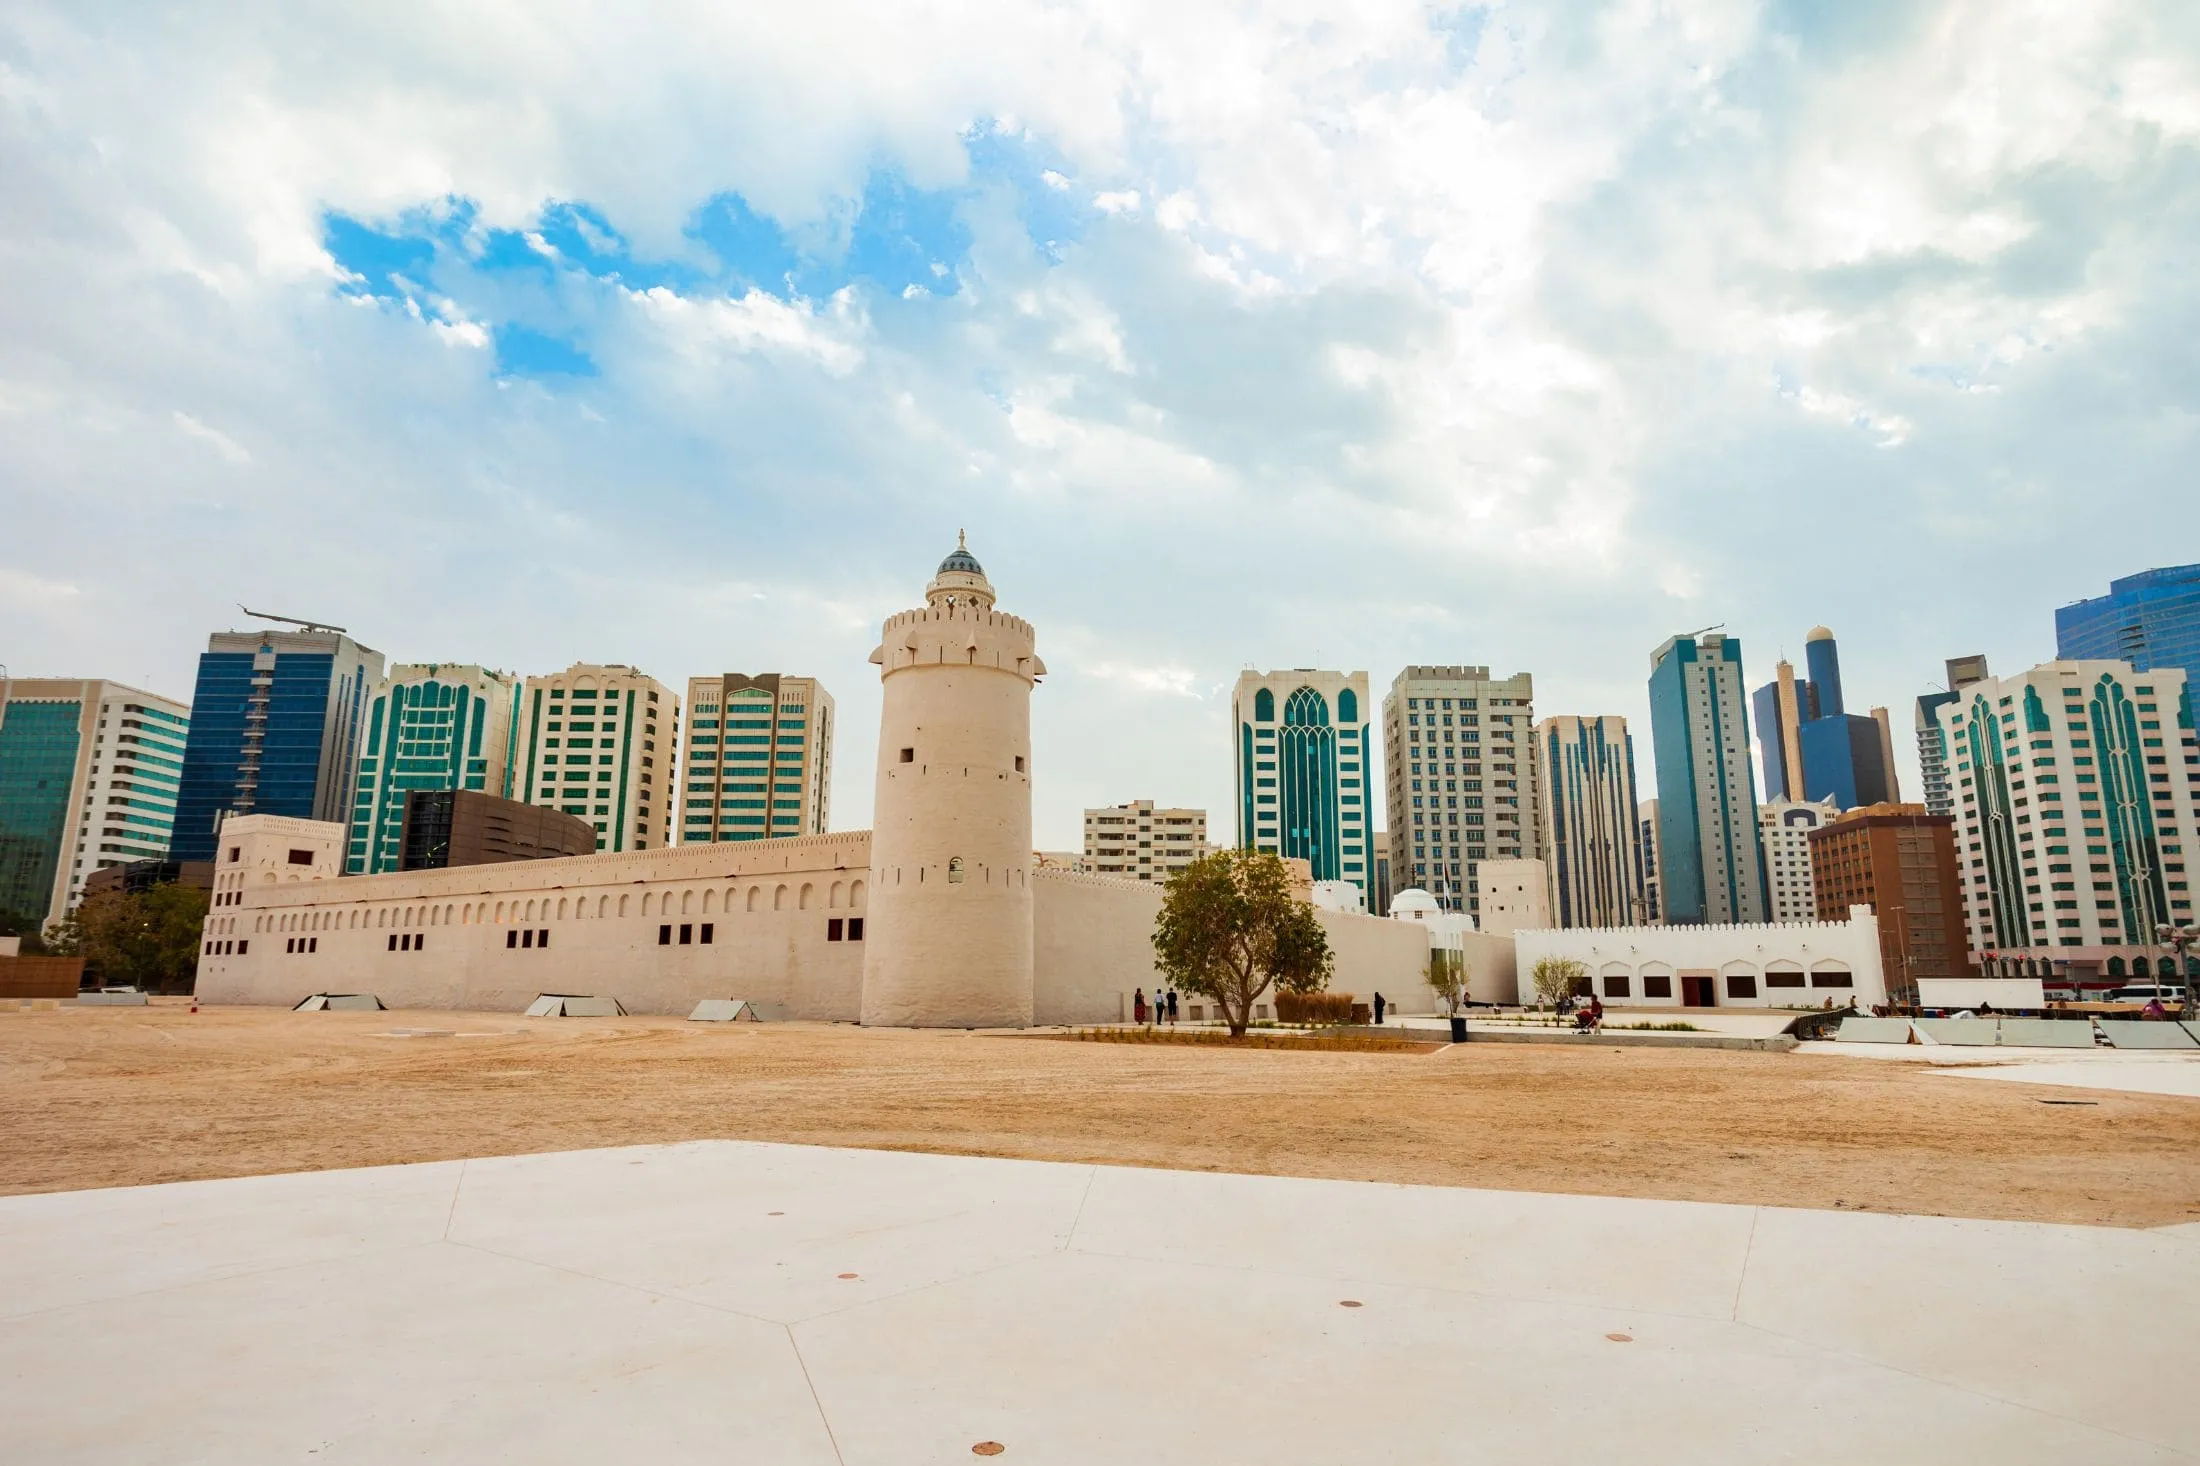 Qasr Al Hosn Fort in Abu Dhabi